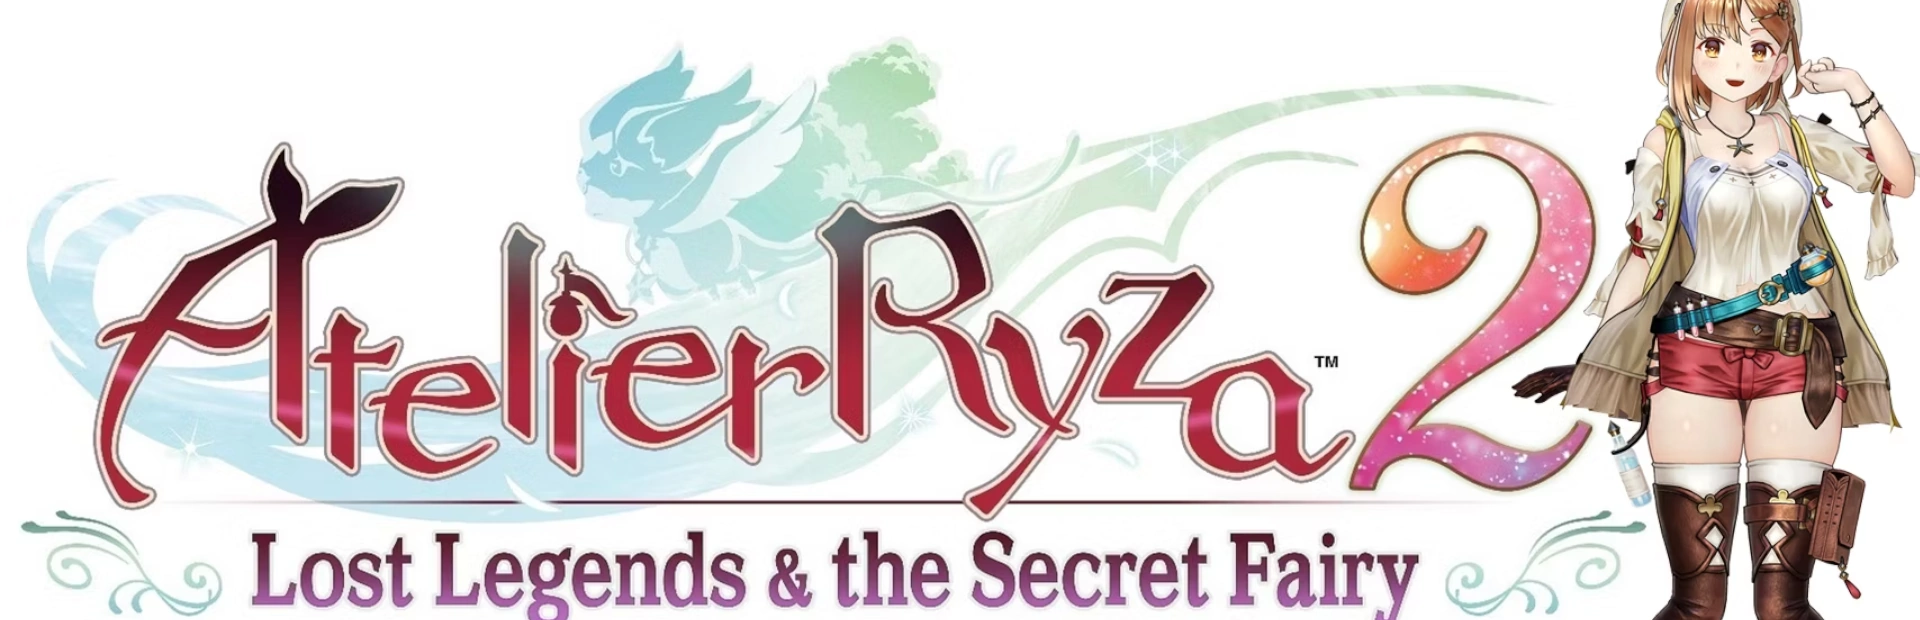 دانلود بازی Atelier Ryza 2 برای پی سی بدون کرک  | گیمباتو